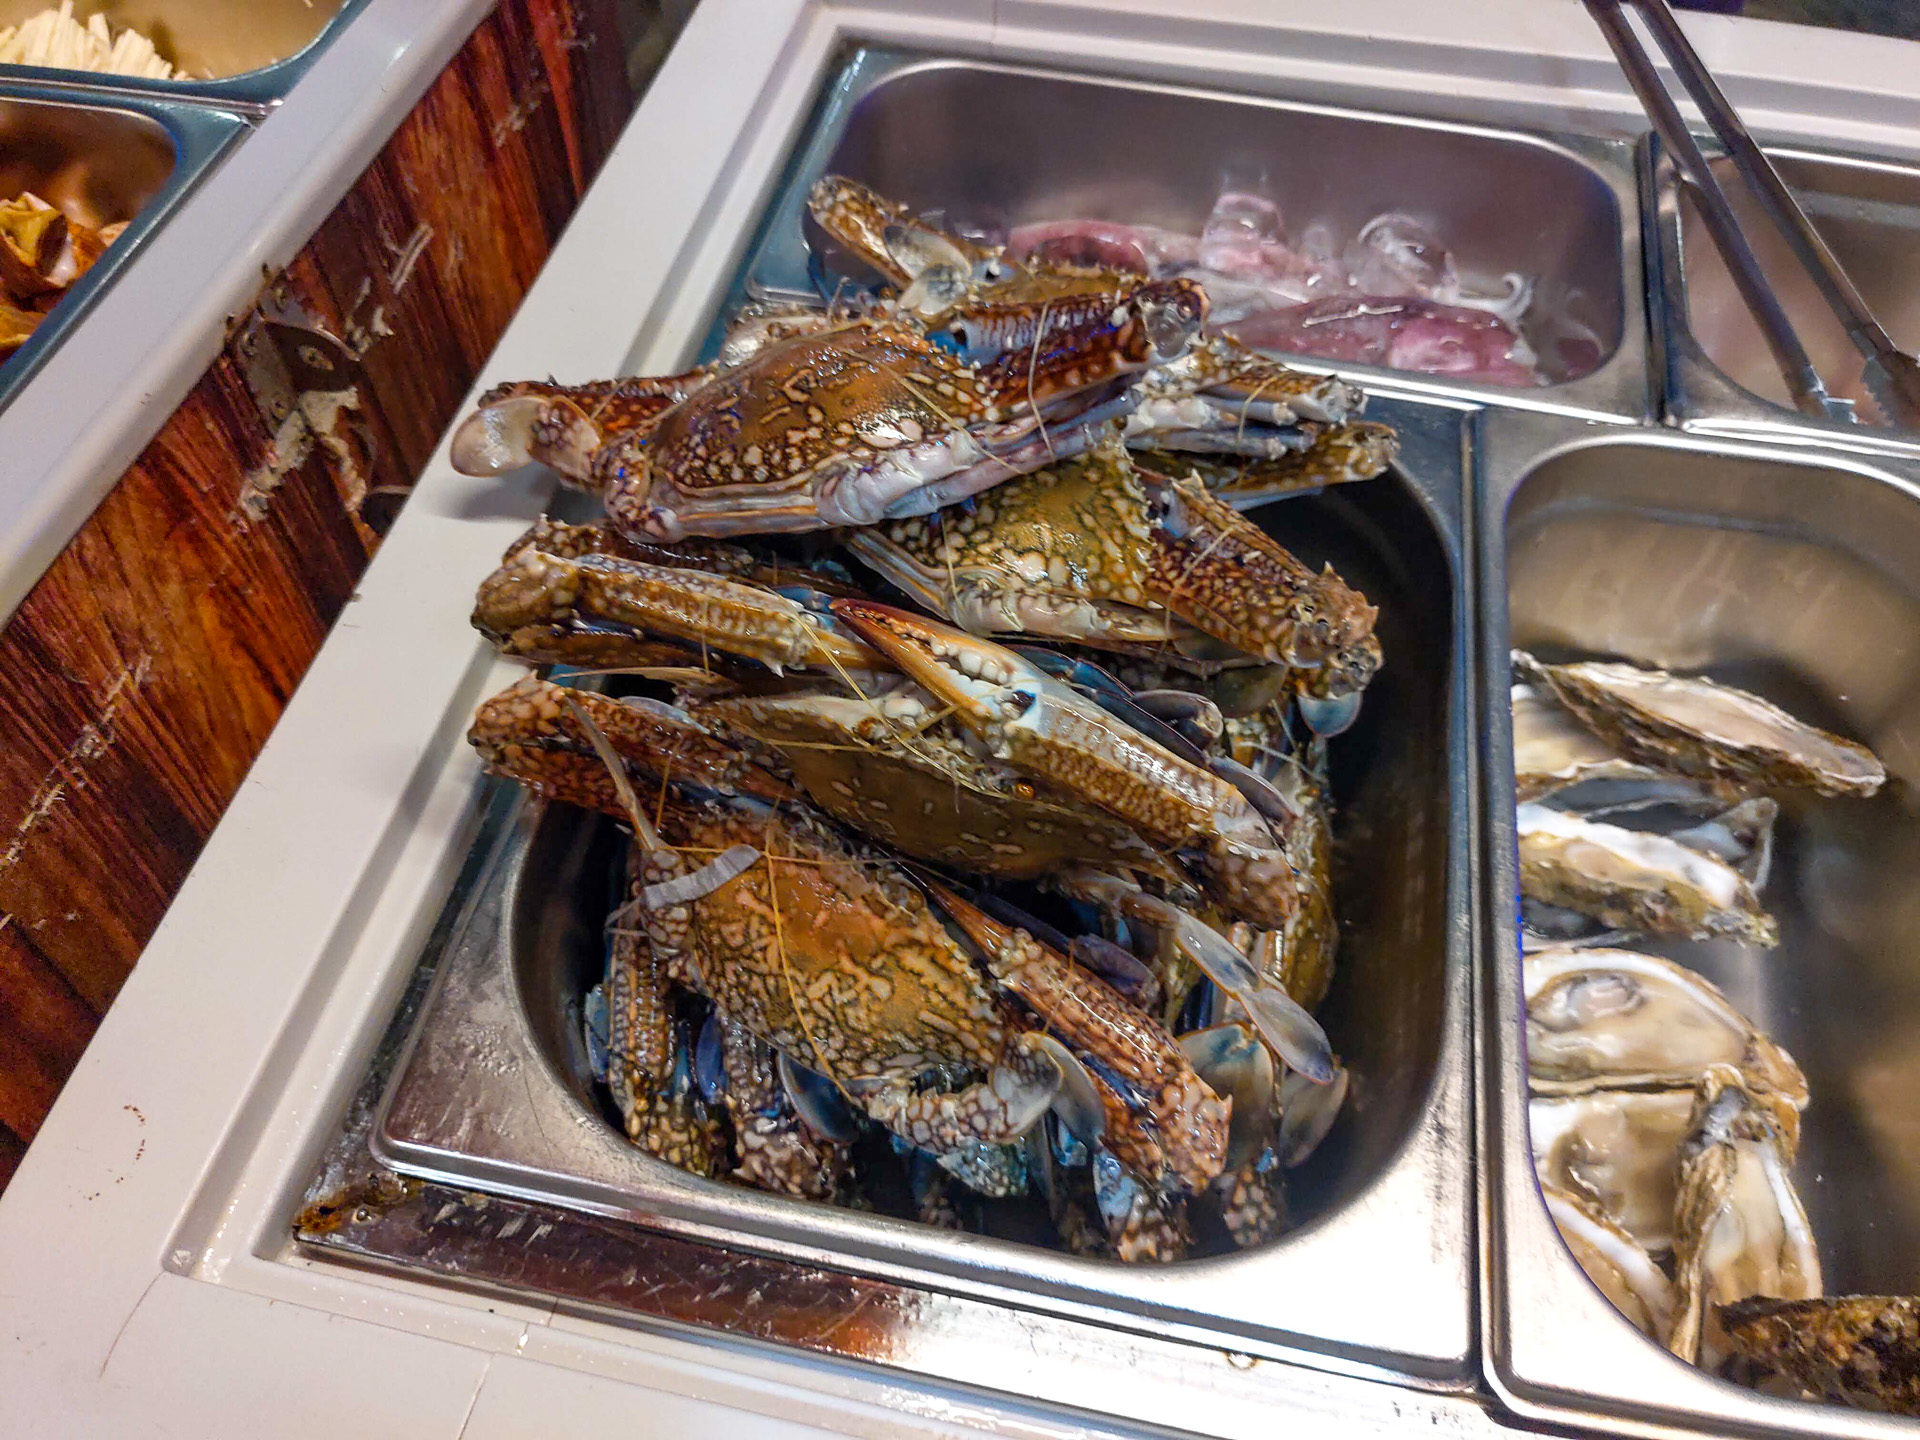 曼谷流水蝦吃到飽》霓虹夜市 Taikong Seafood 大口啖蝦超過癮！